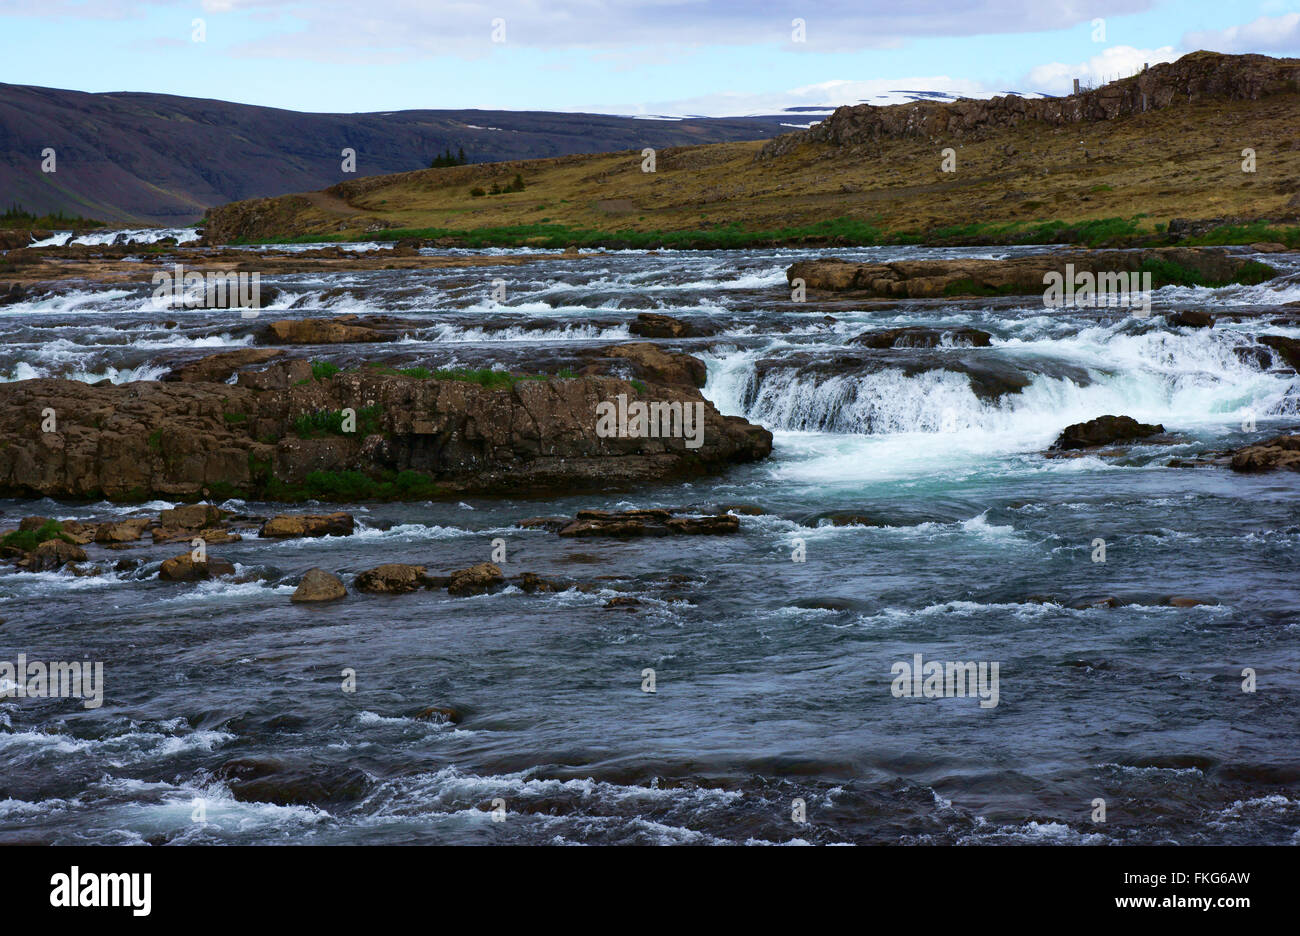 Laxa i Kjos river south of Arkanes, W. Iceland Stock Photo